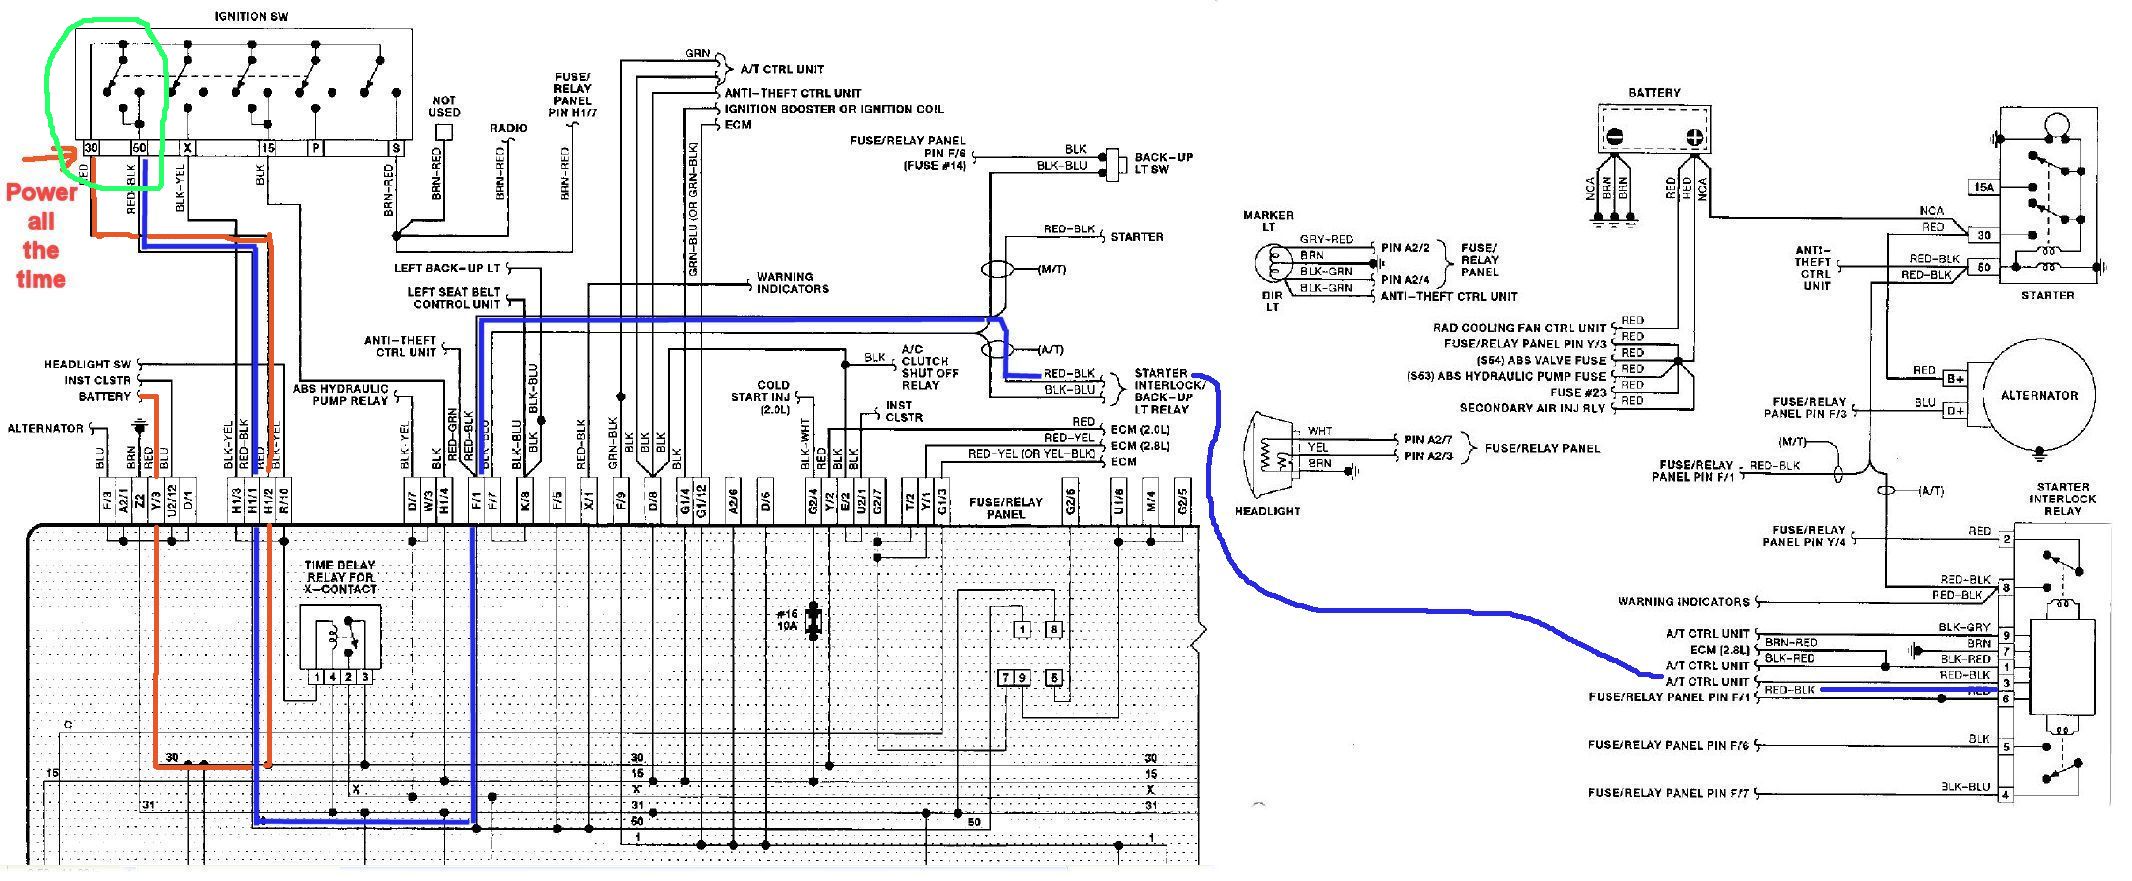 2003 Vw Passat Wiring Diagram Pdf - Wiring Diagram and Schematic